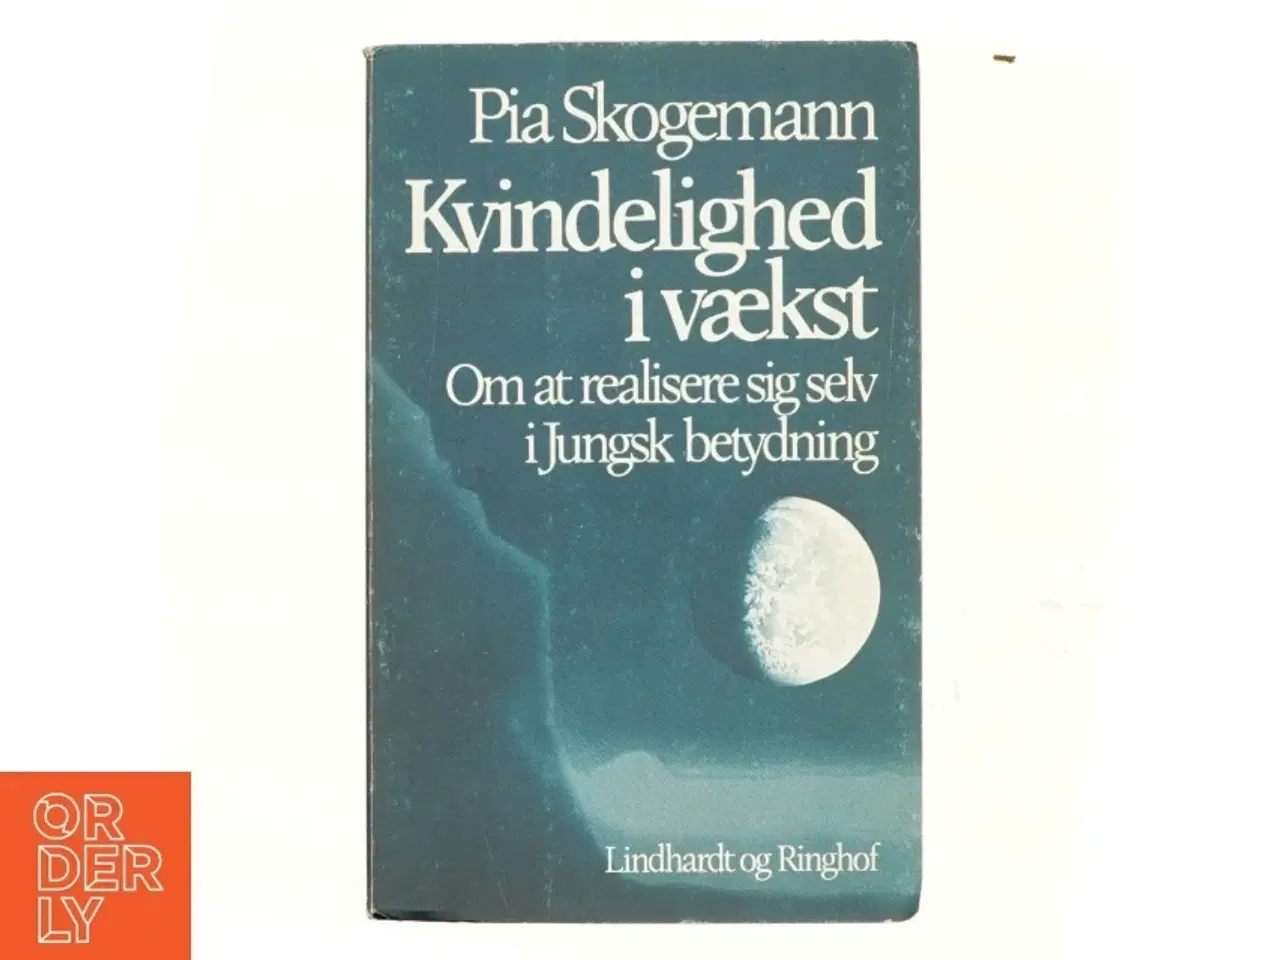 Billede 1 - Kvindelighed i vækst af Pia Skogemann (bog)